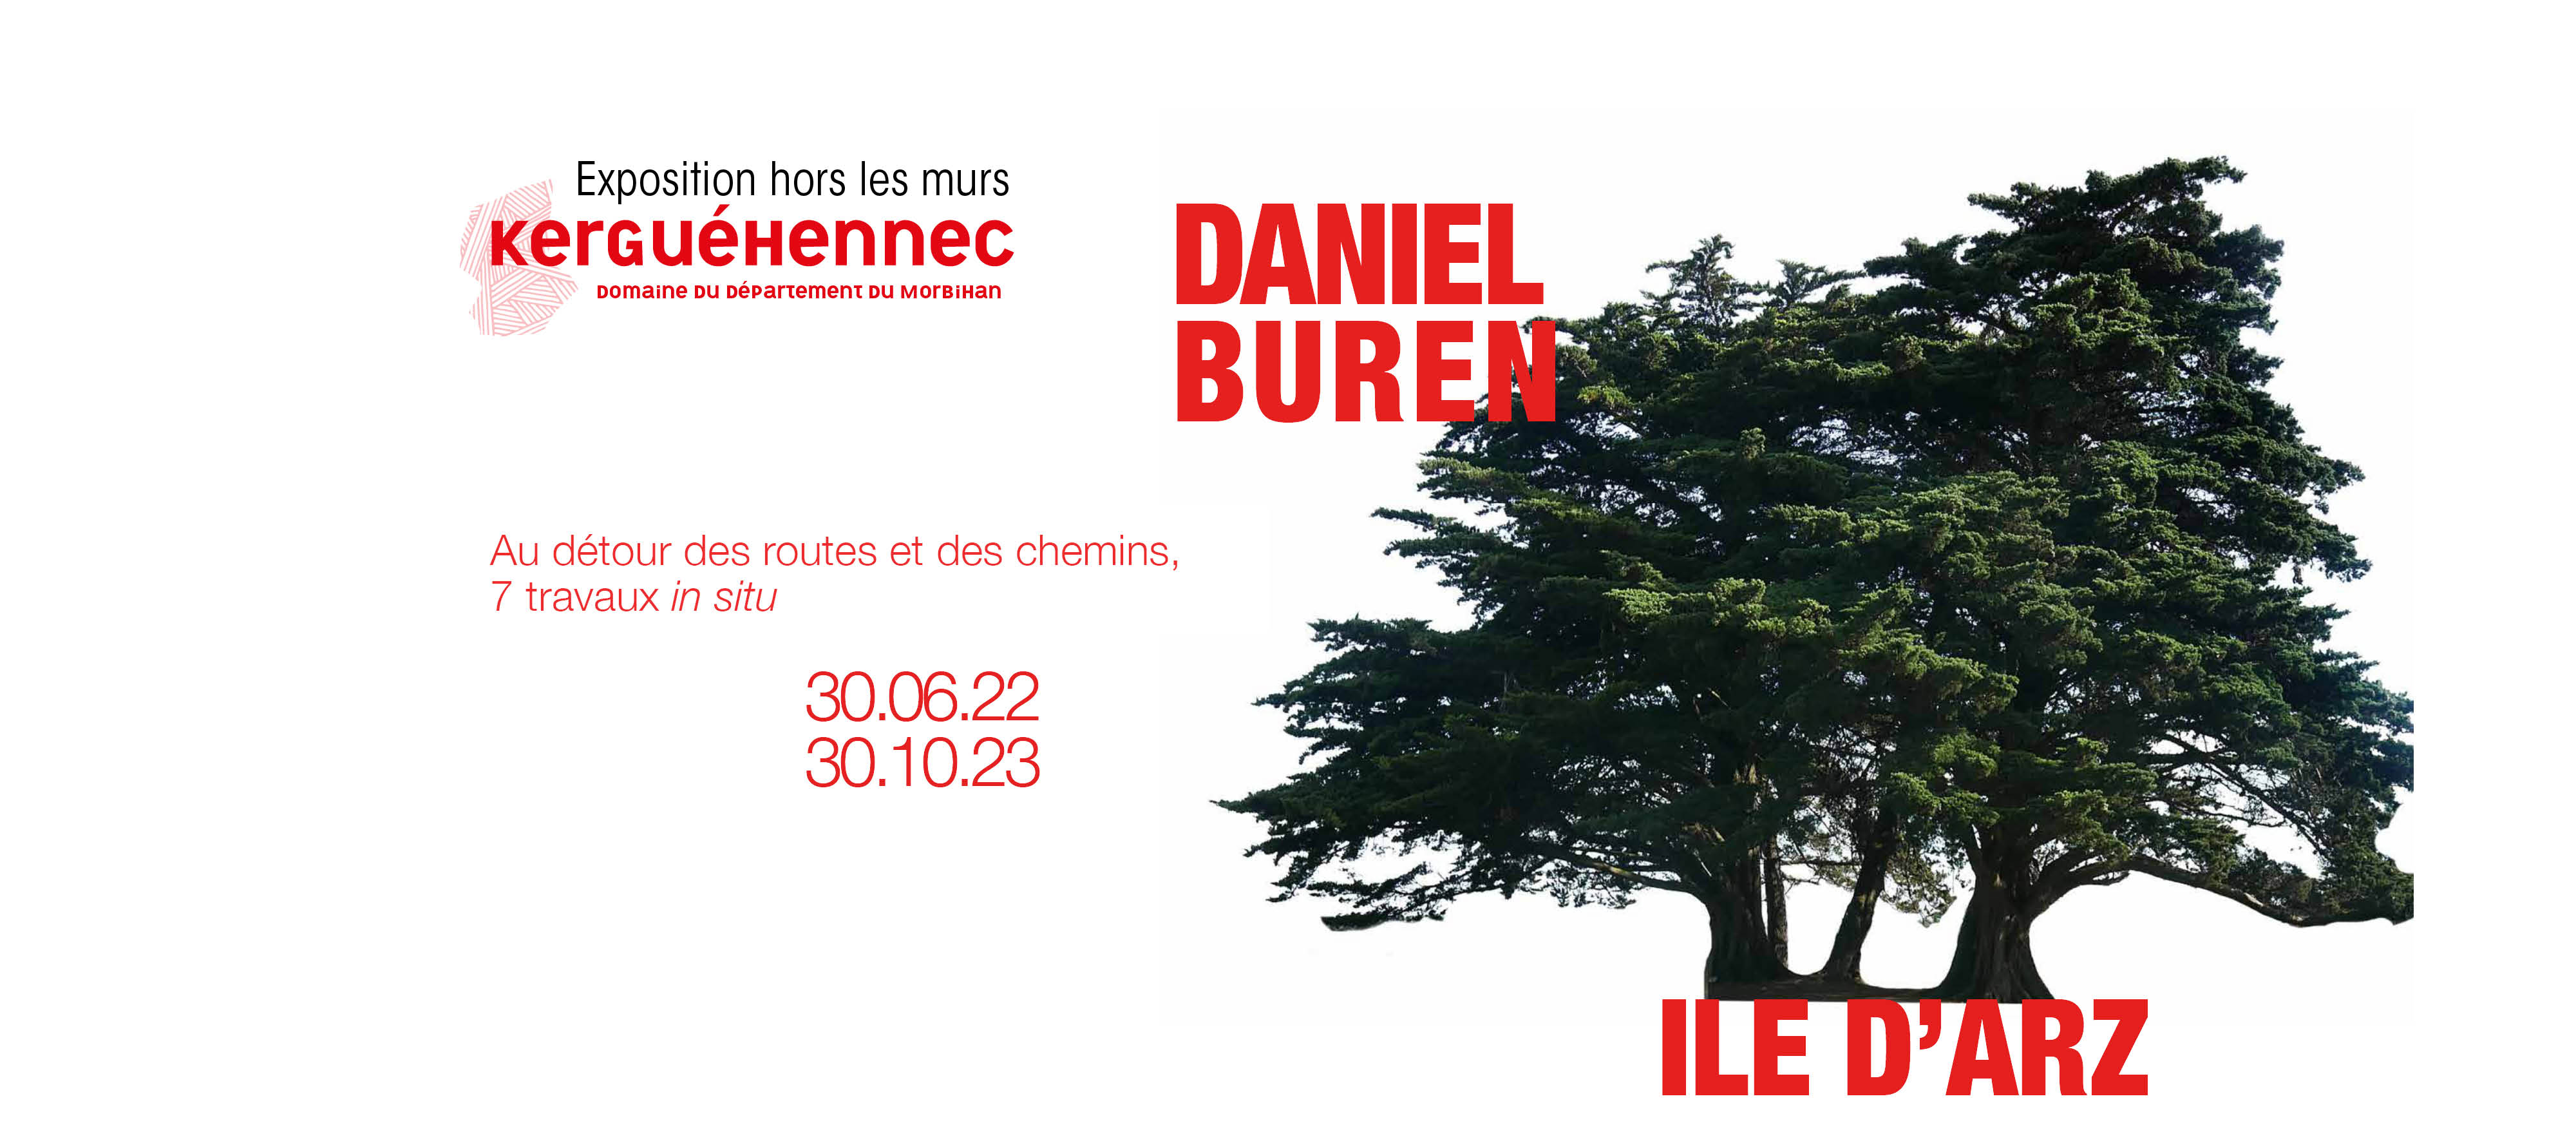 Annonce de l'exposition de Daniel Buren à l'île d'Arz.